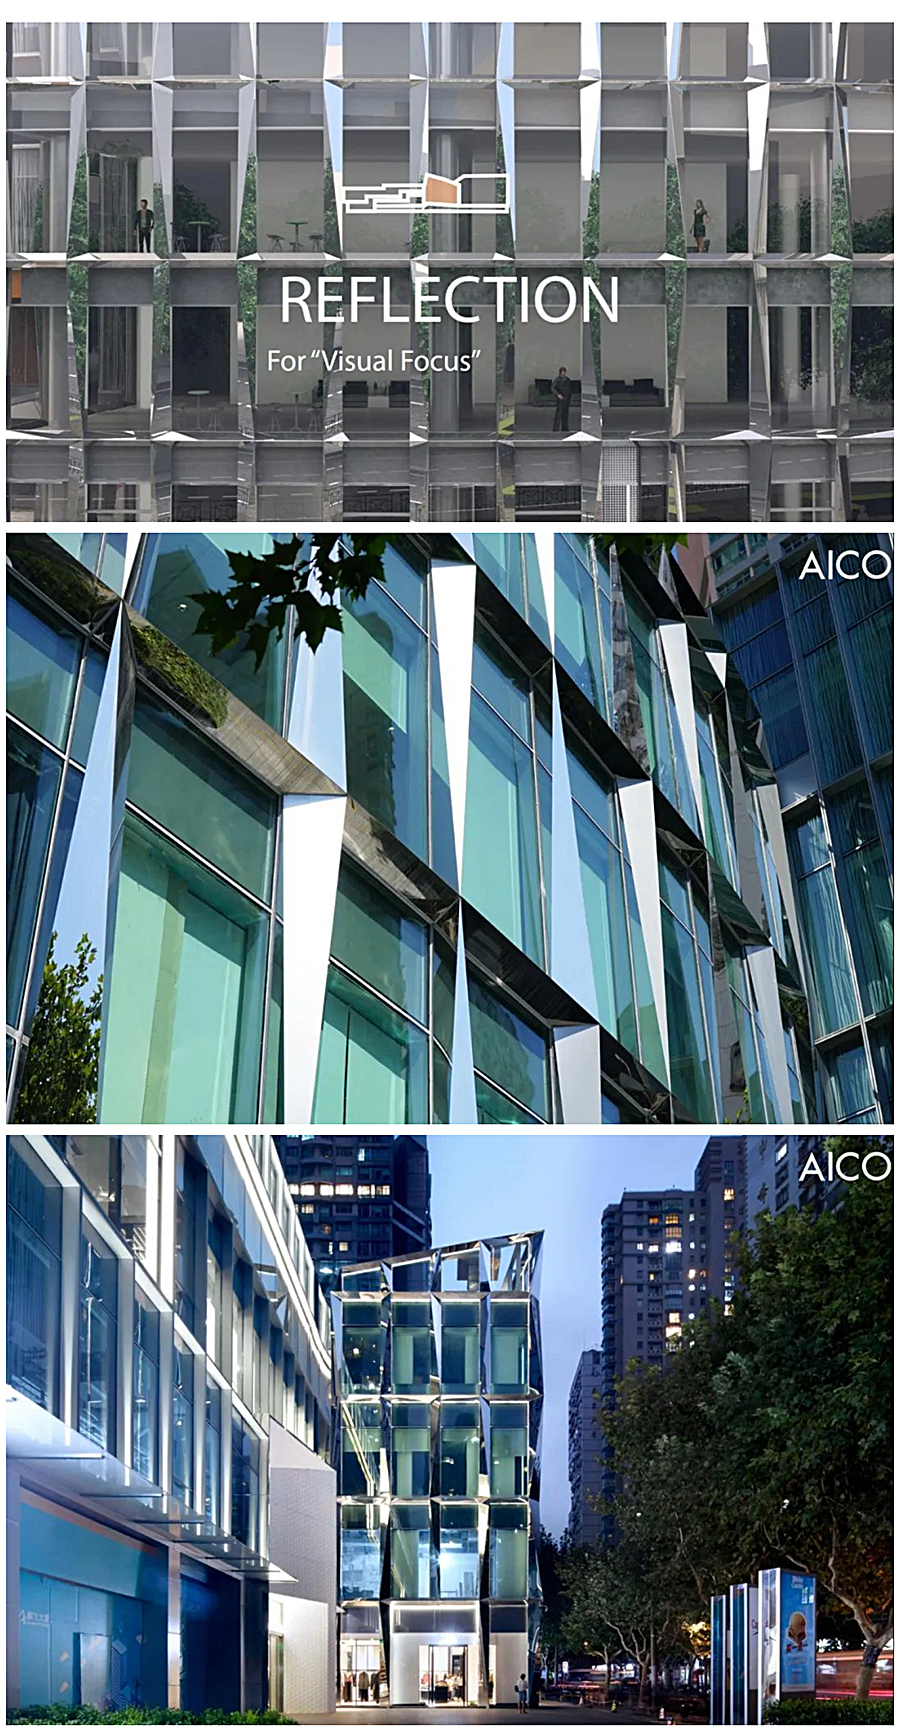 打破边界的立体混合社区：上海腾飞大厦改造-_-AICO-2020-REARD金奖项目赏析_0010_图层-11.jpg